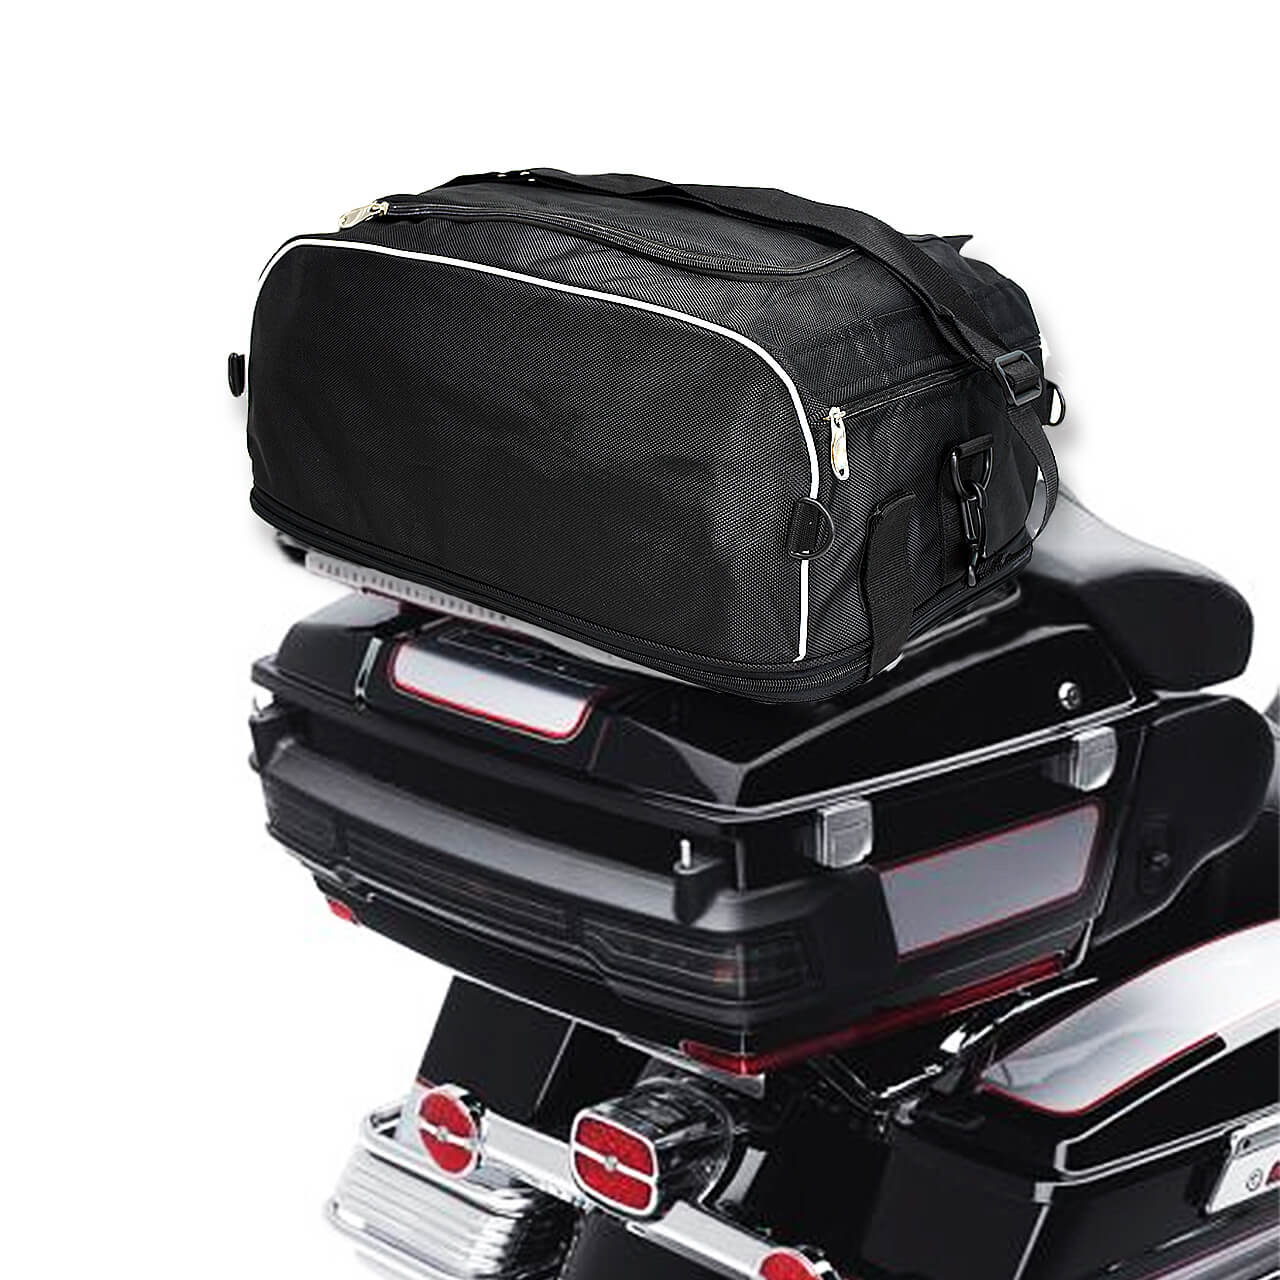 CB0077-waterproof-luggage-rack-bag-for-harley